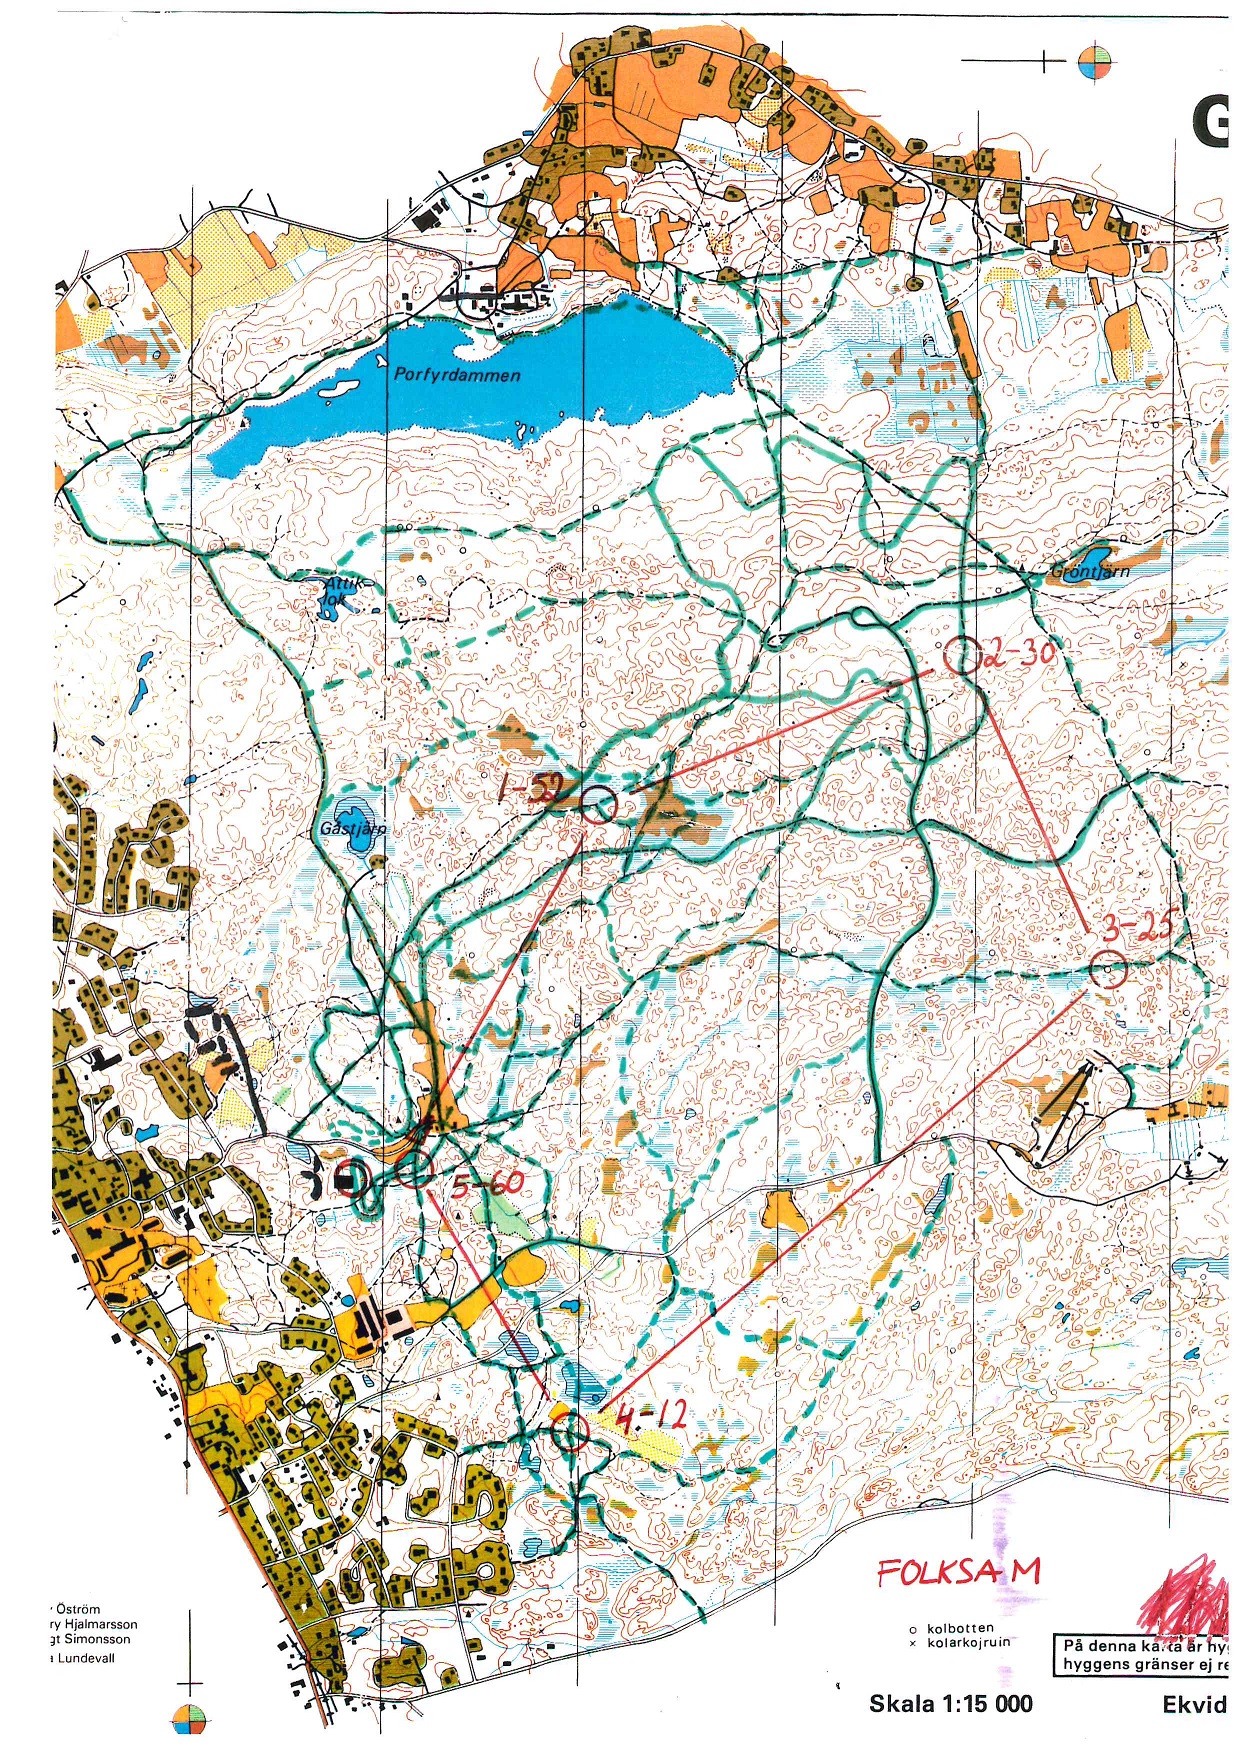 USM, Skid-O, Älvdalen (20-01-1992)